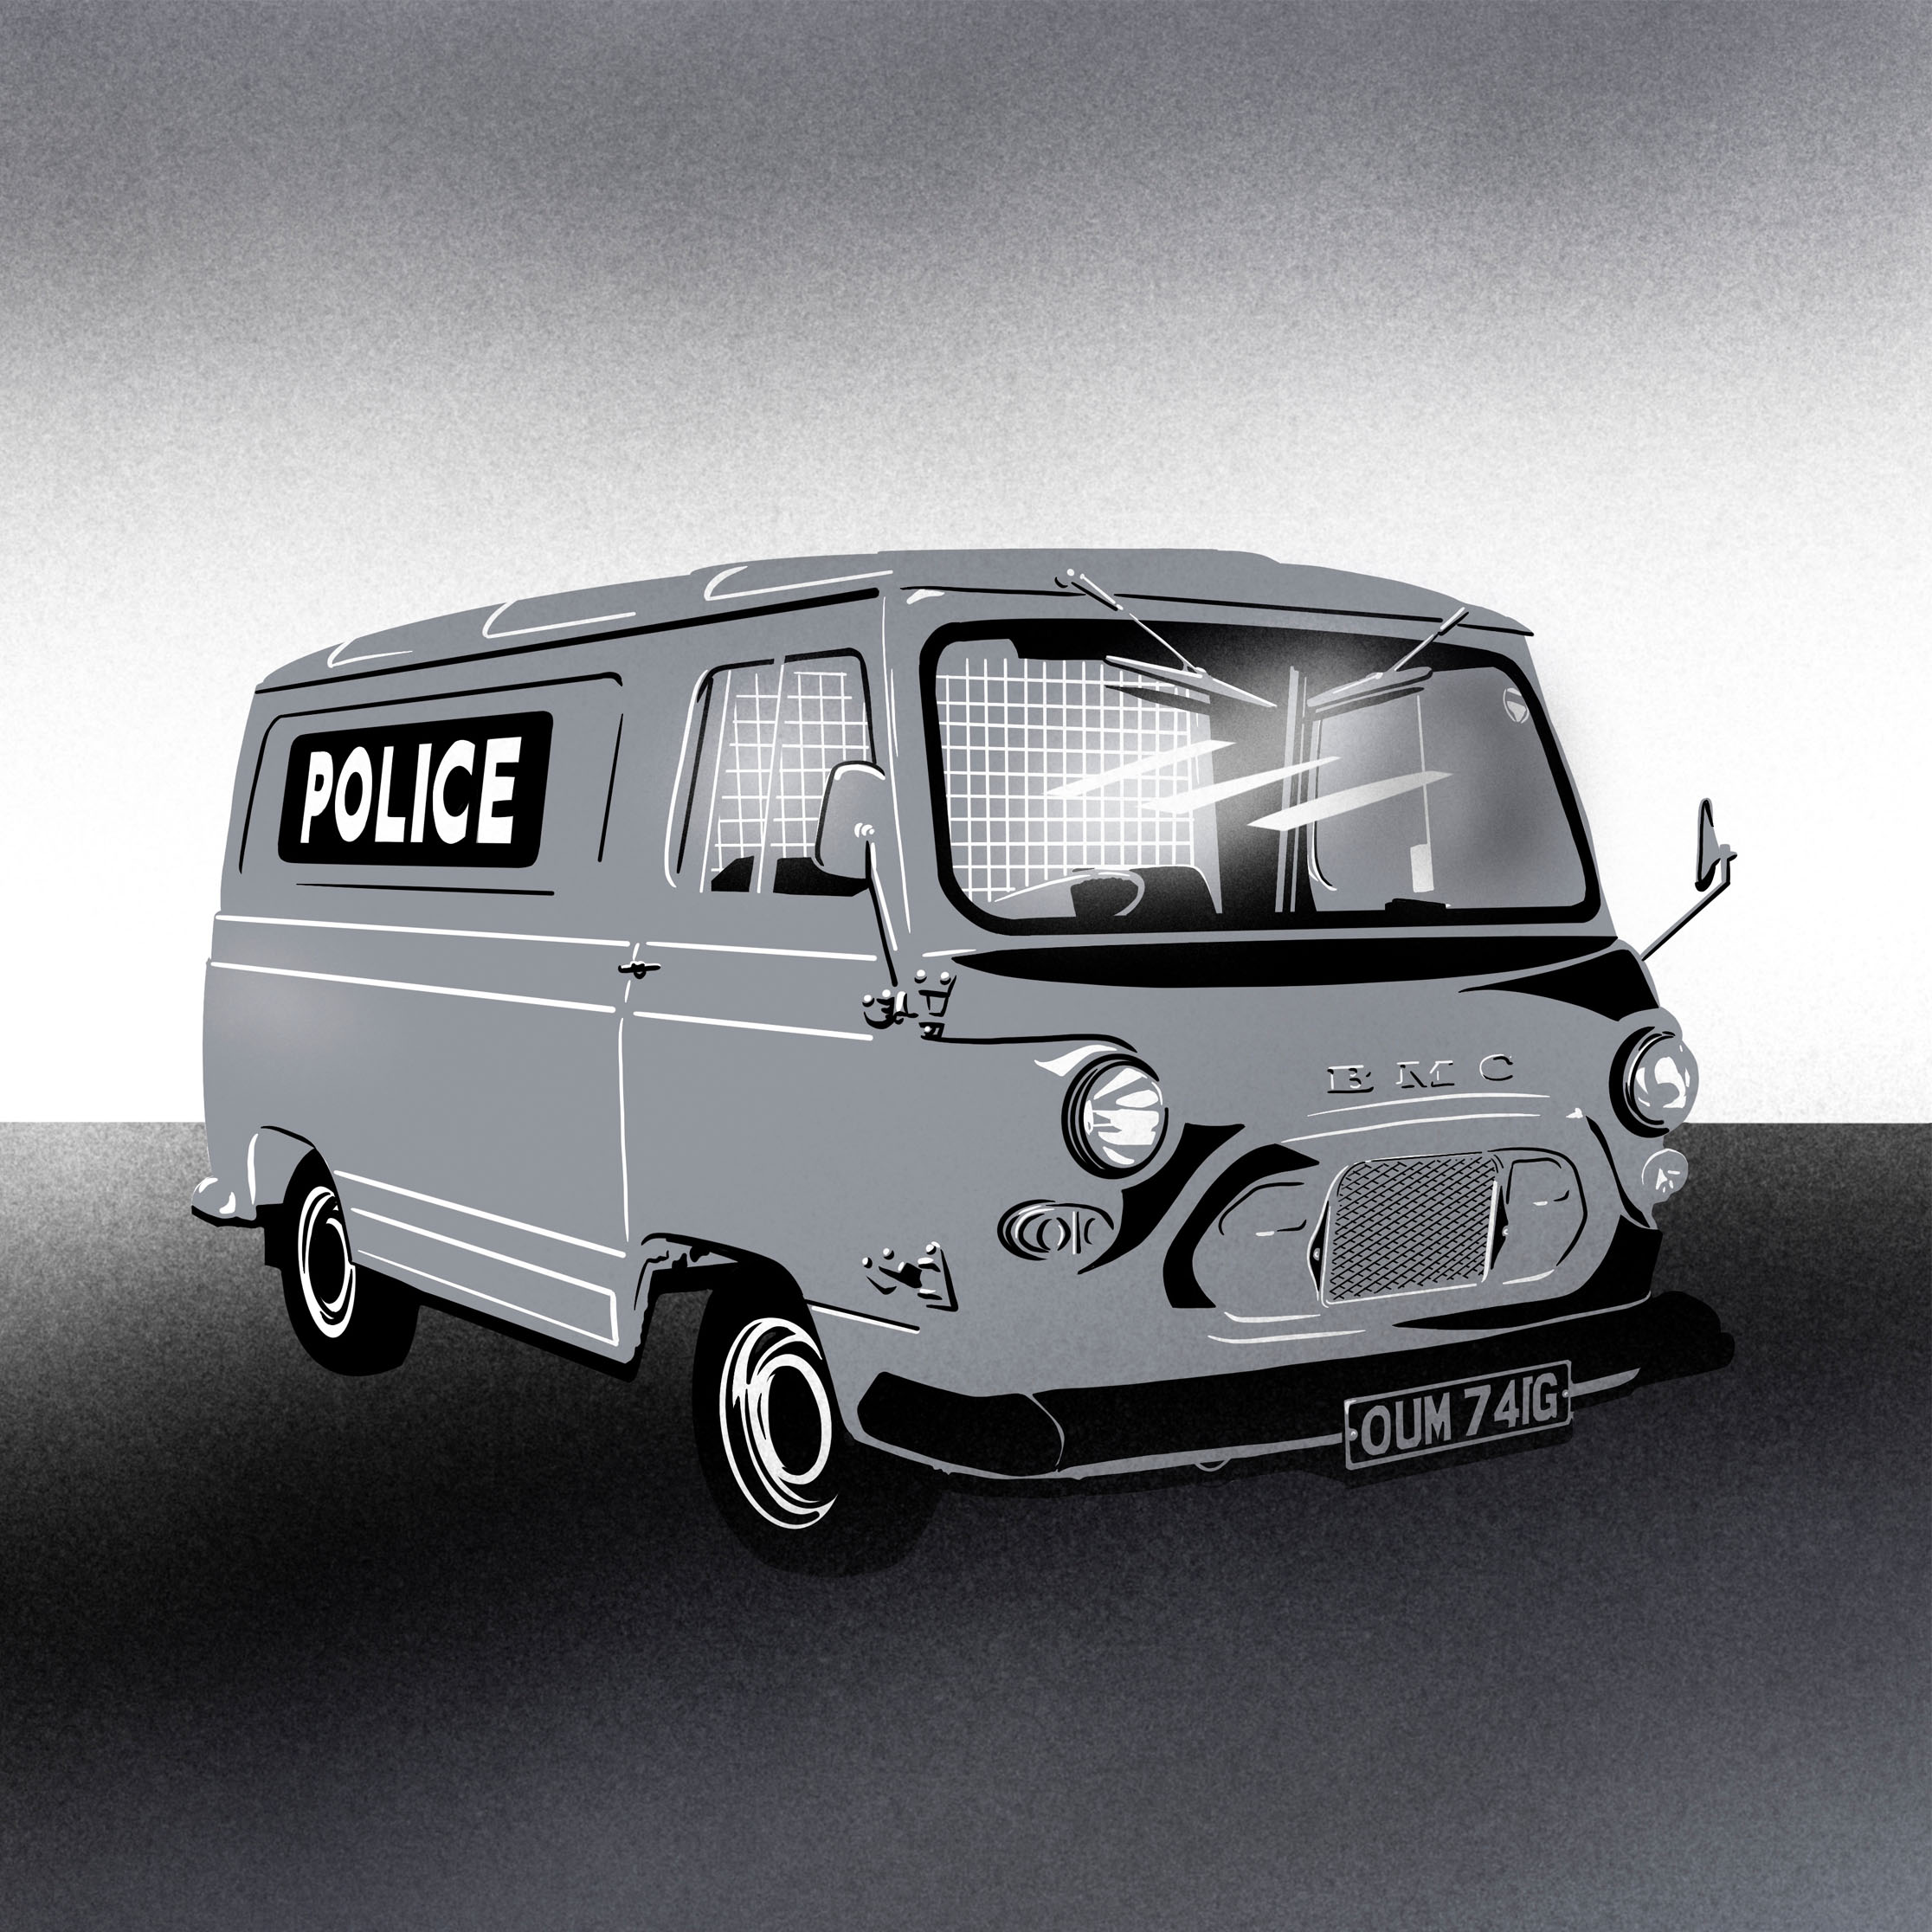 Illustration artwork of a police van